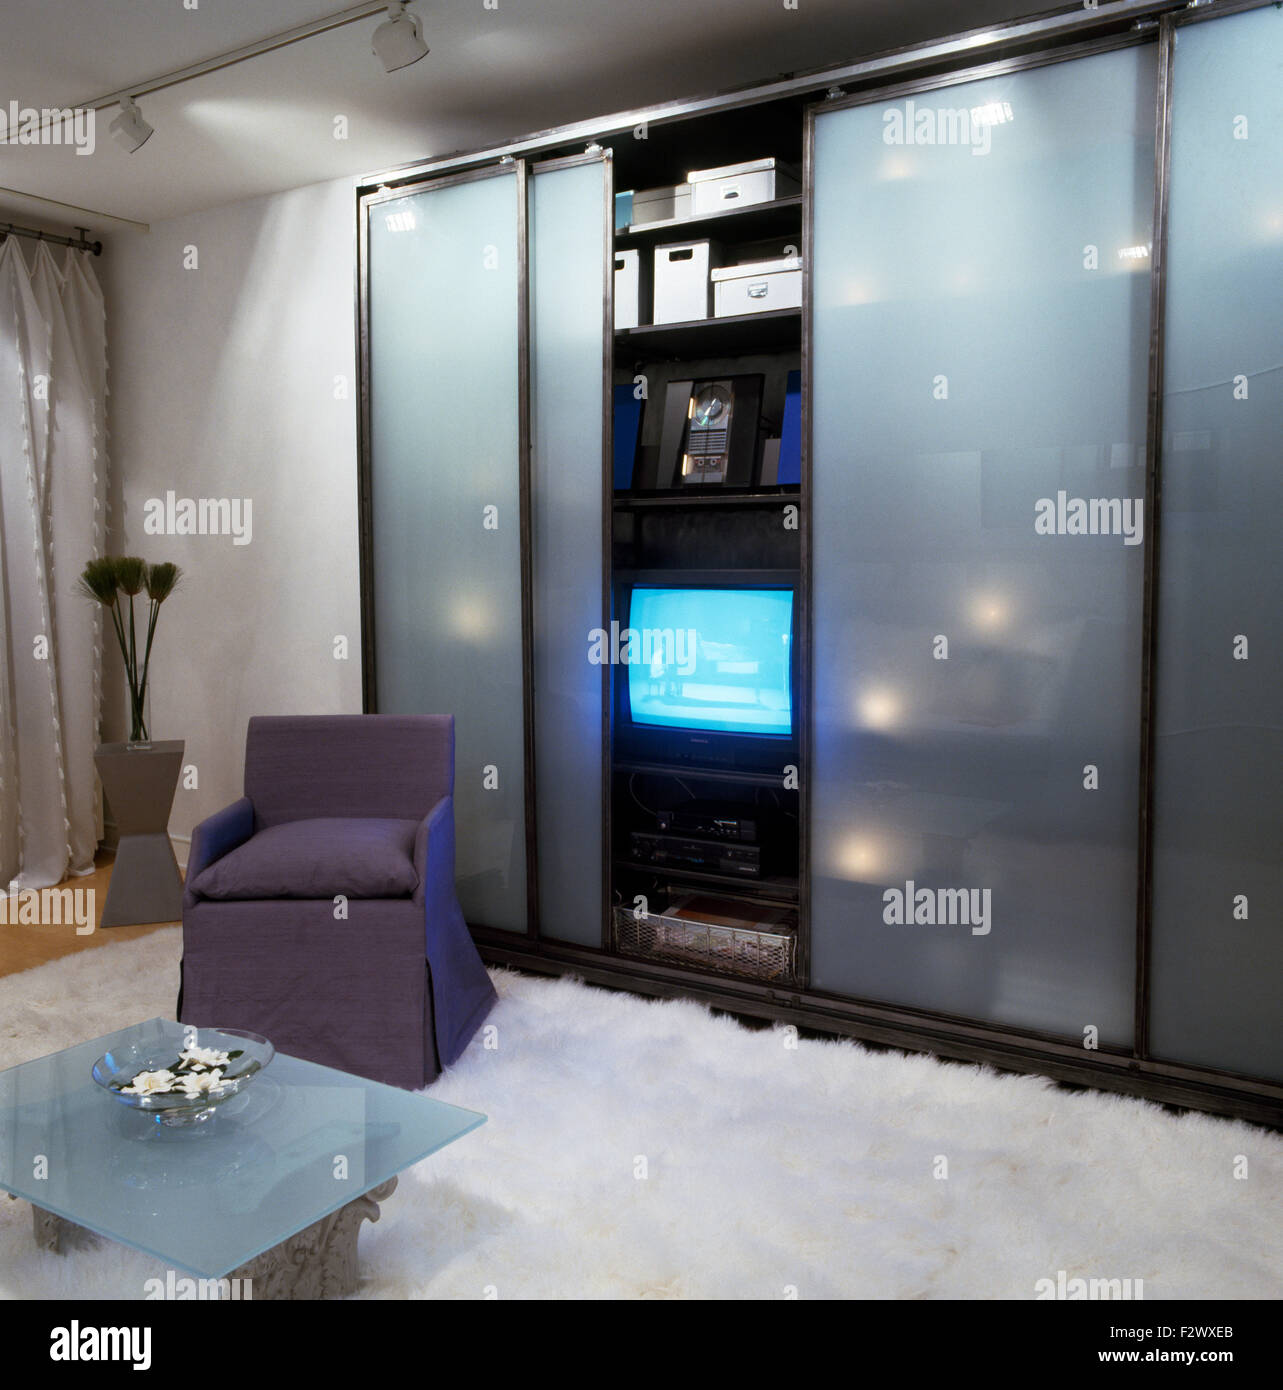 Portes coulissantes en verre opaque sur armoire avec télévision dans ville chambre avec tapis de fourrure blanche sur le sol Banque D'Images